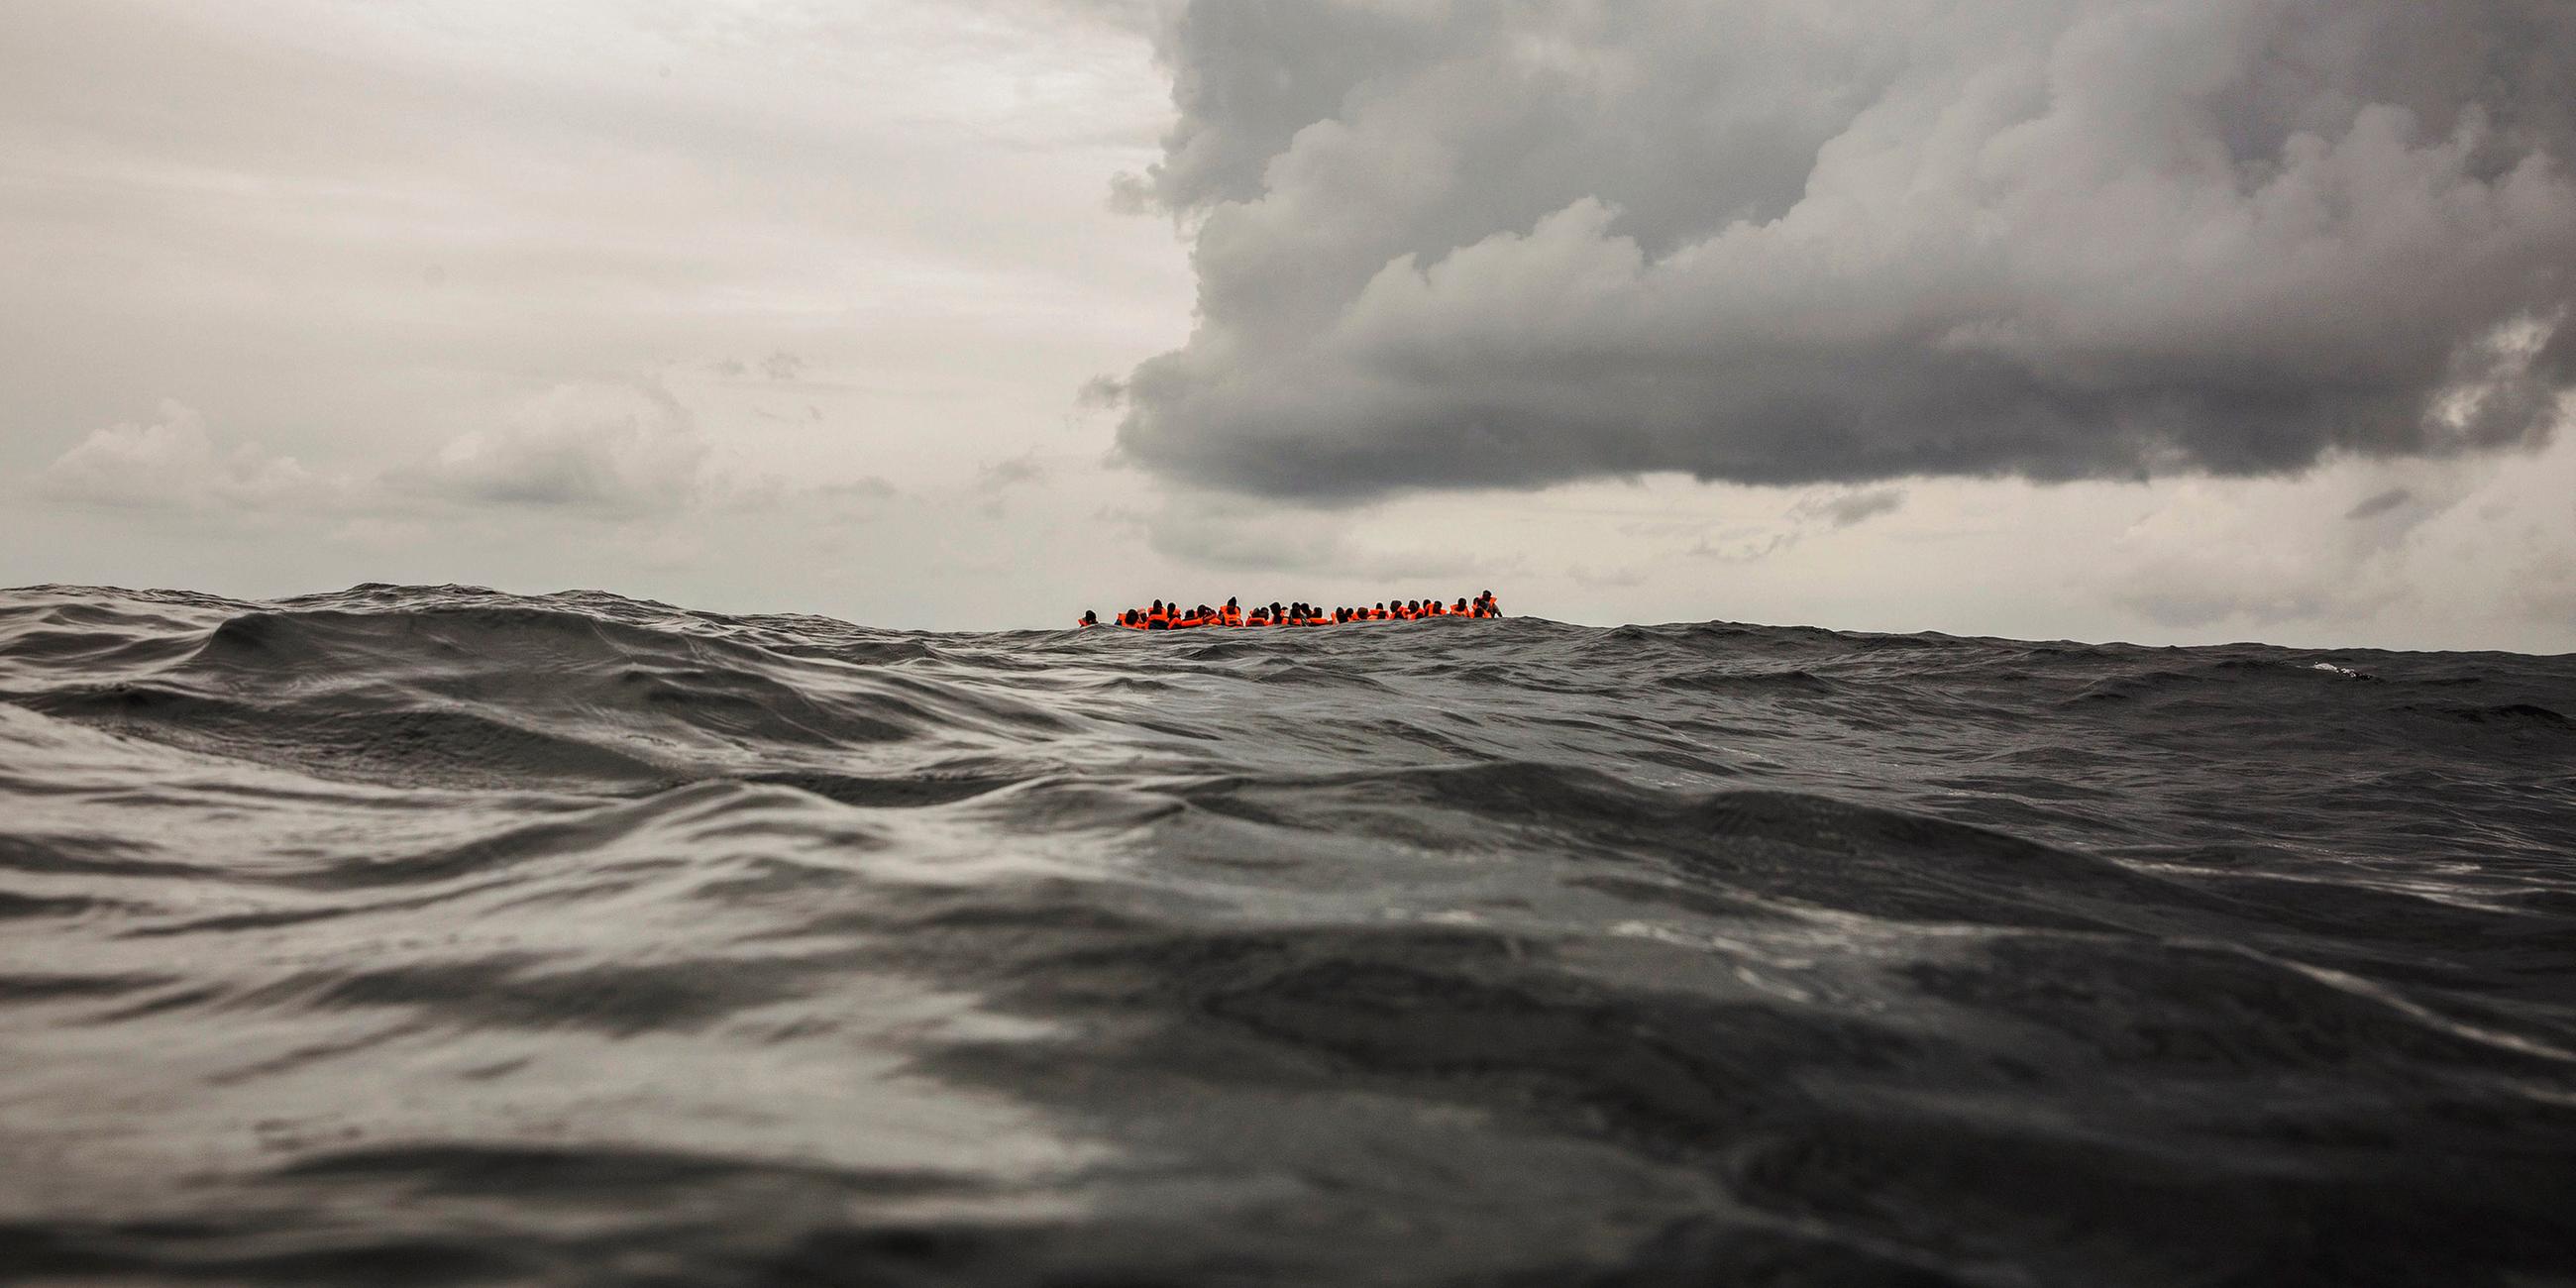 Ein Boot mit geflüchteten Menschen auf dem Meer.